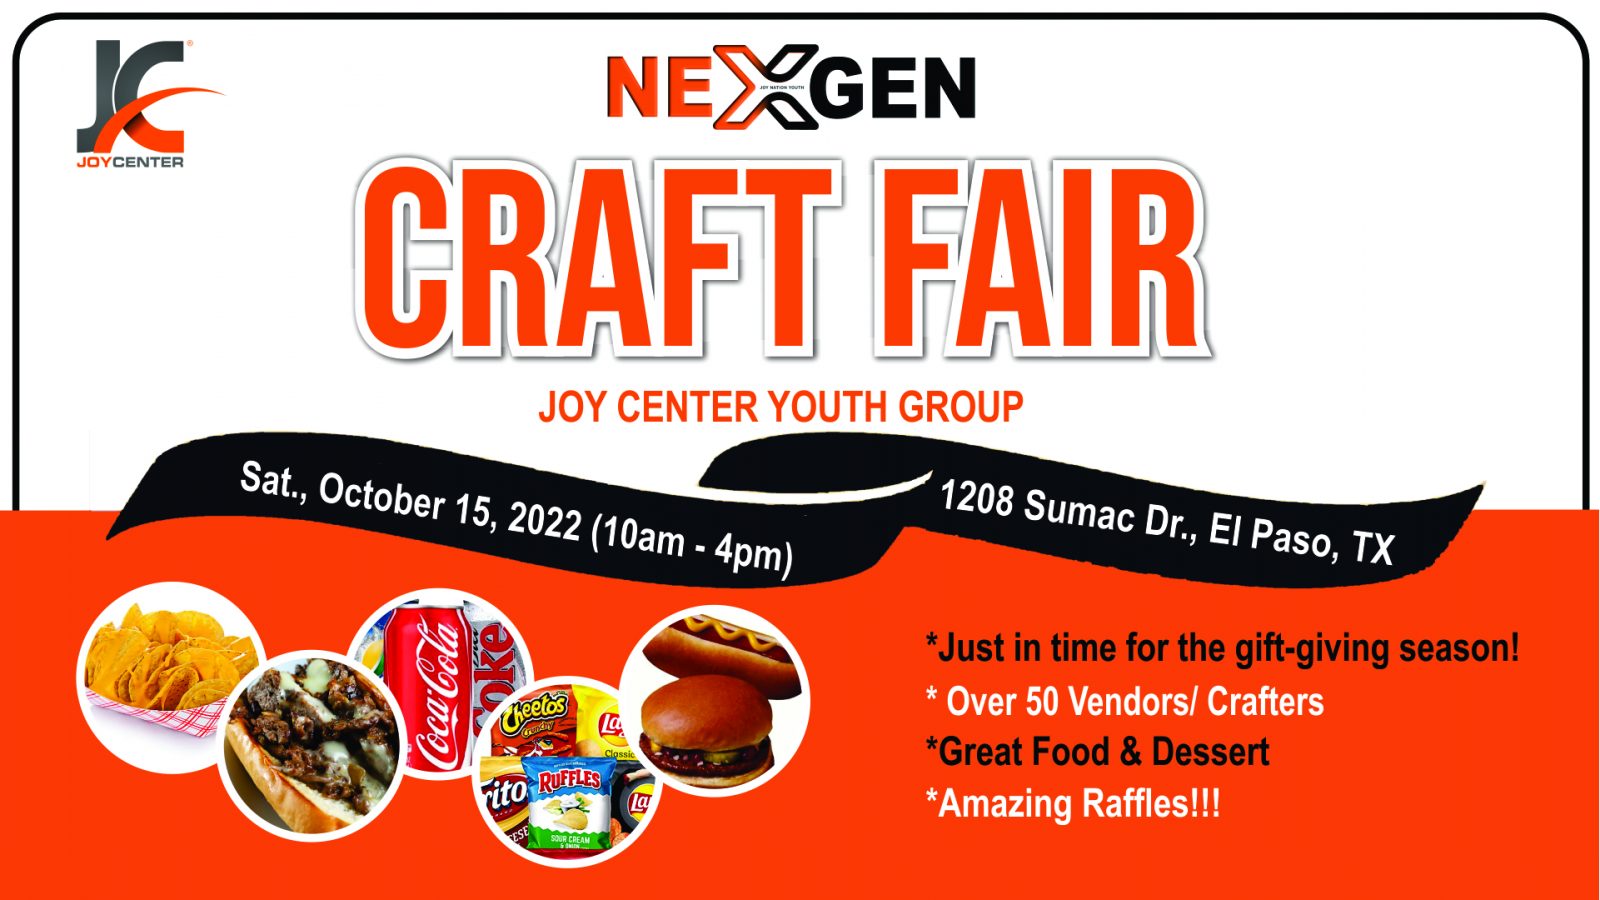 Next Gen Craft Fair